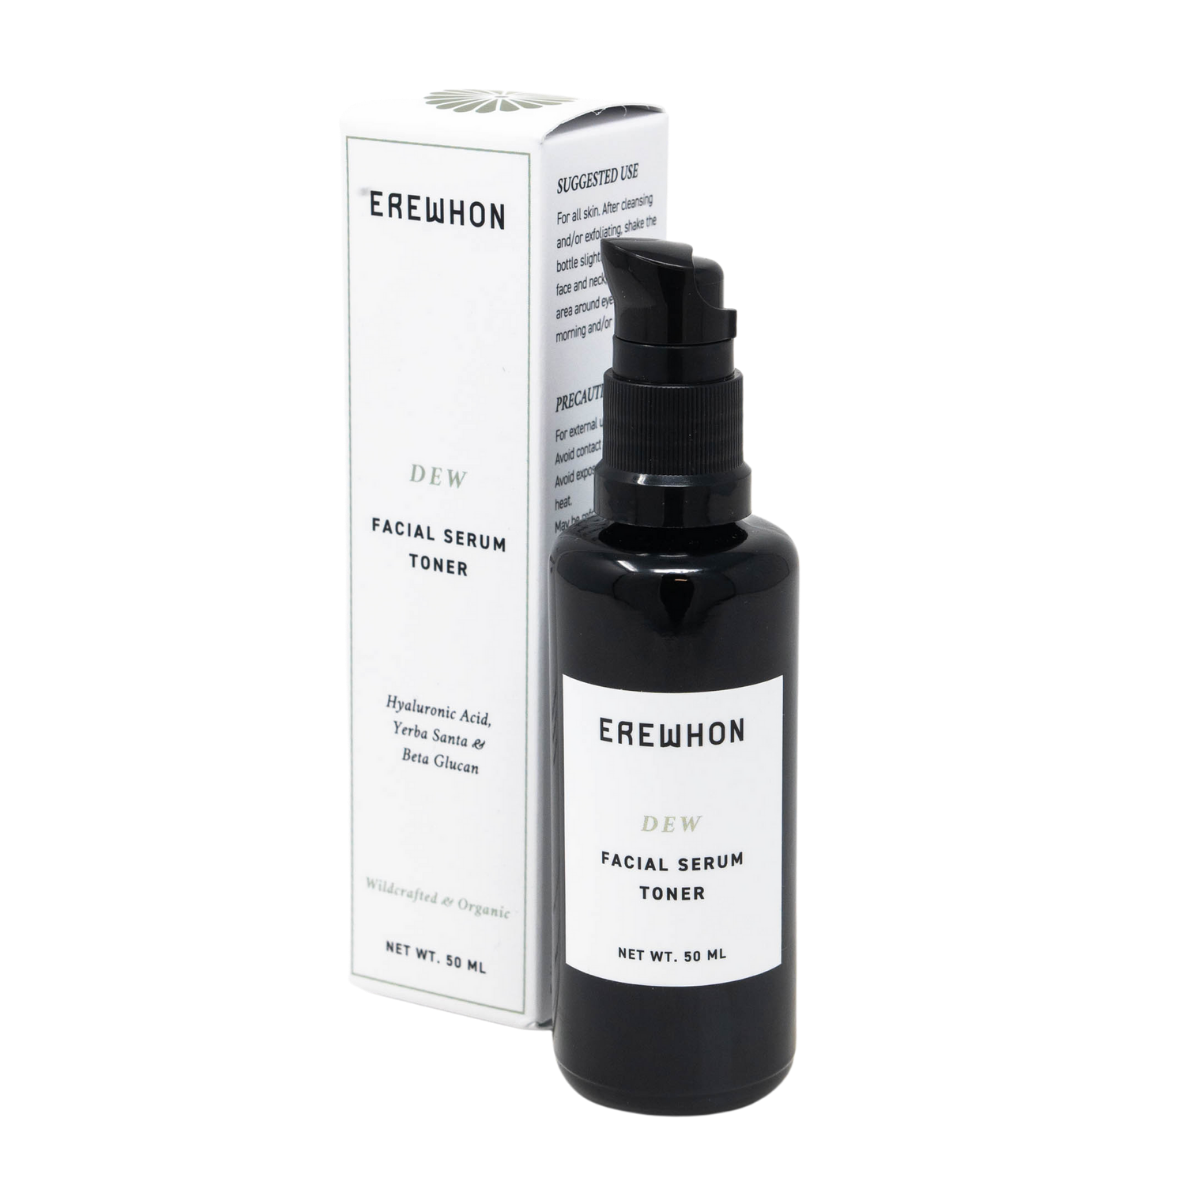 DEW Facial Serum Toner | 50mL-Skin Care-Erewhon